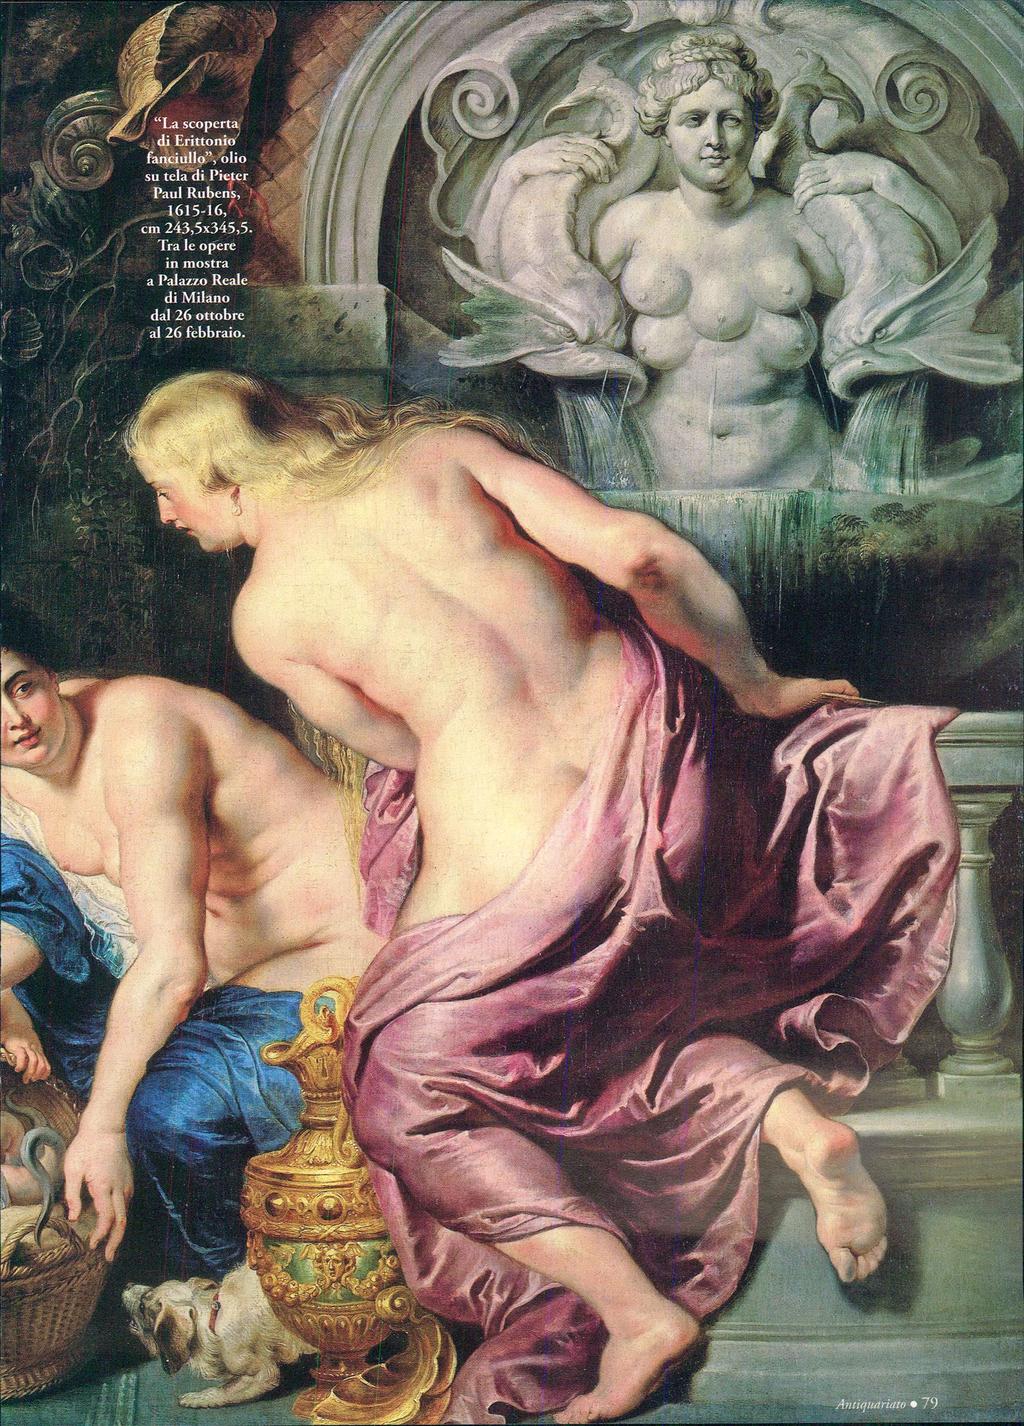 "La scoperta di Erittonio' fanciullo", olio su tela di Pieter Paul Rubens, 1615-16, cm